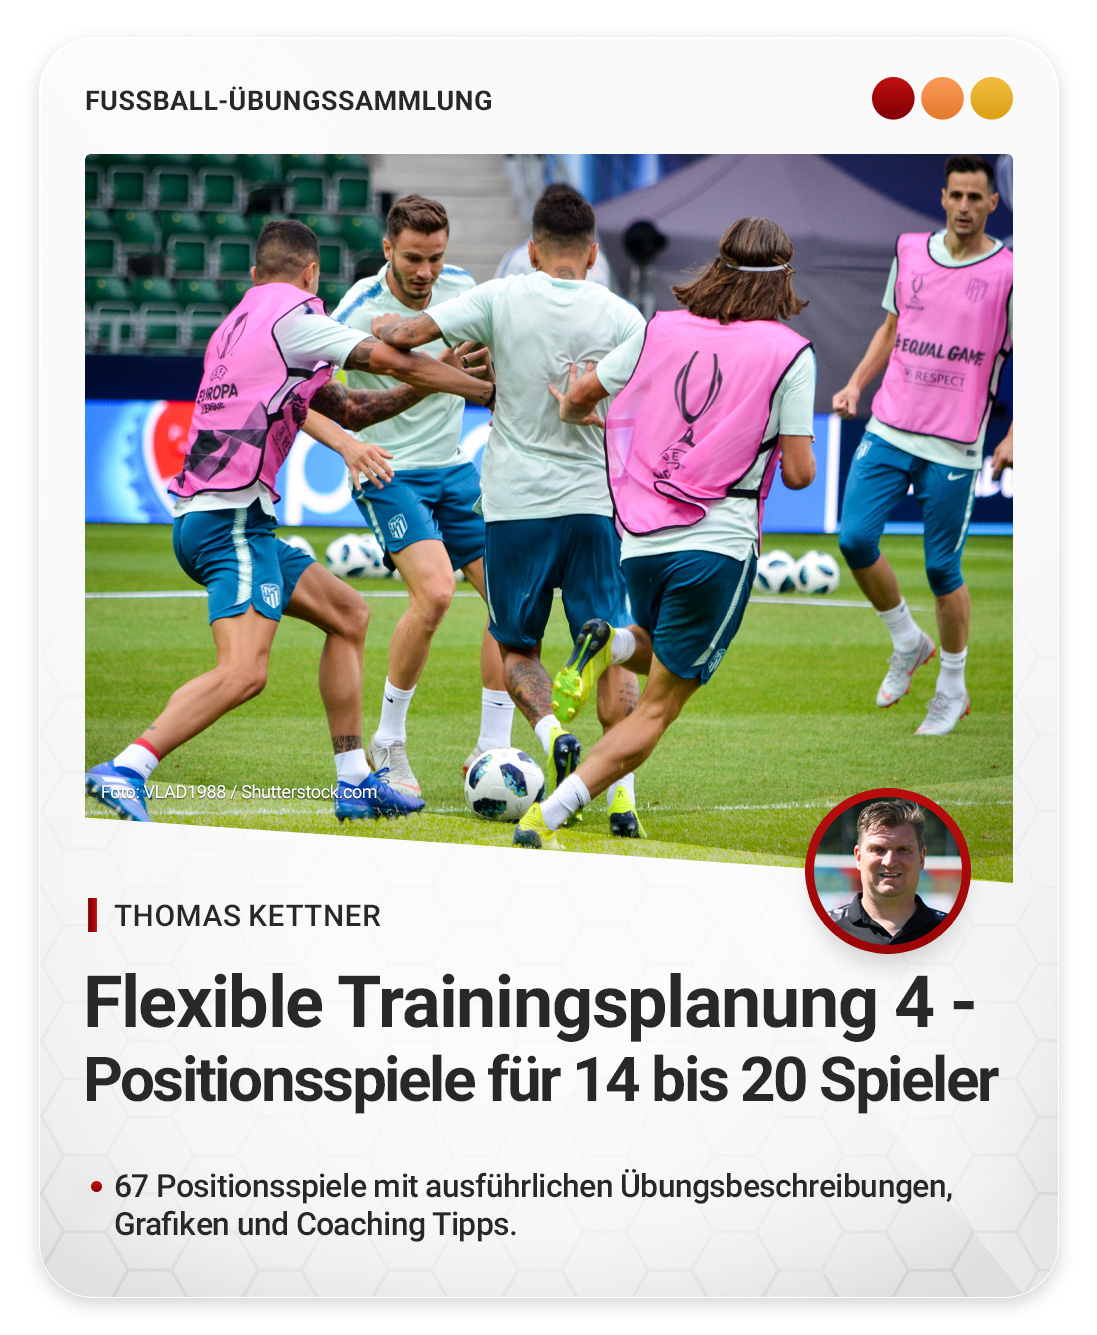 Flexible Trainingsplanung 4 - Positionsspiele für 14 bis 20 Spieler (Übungssammlung)